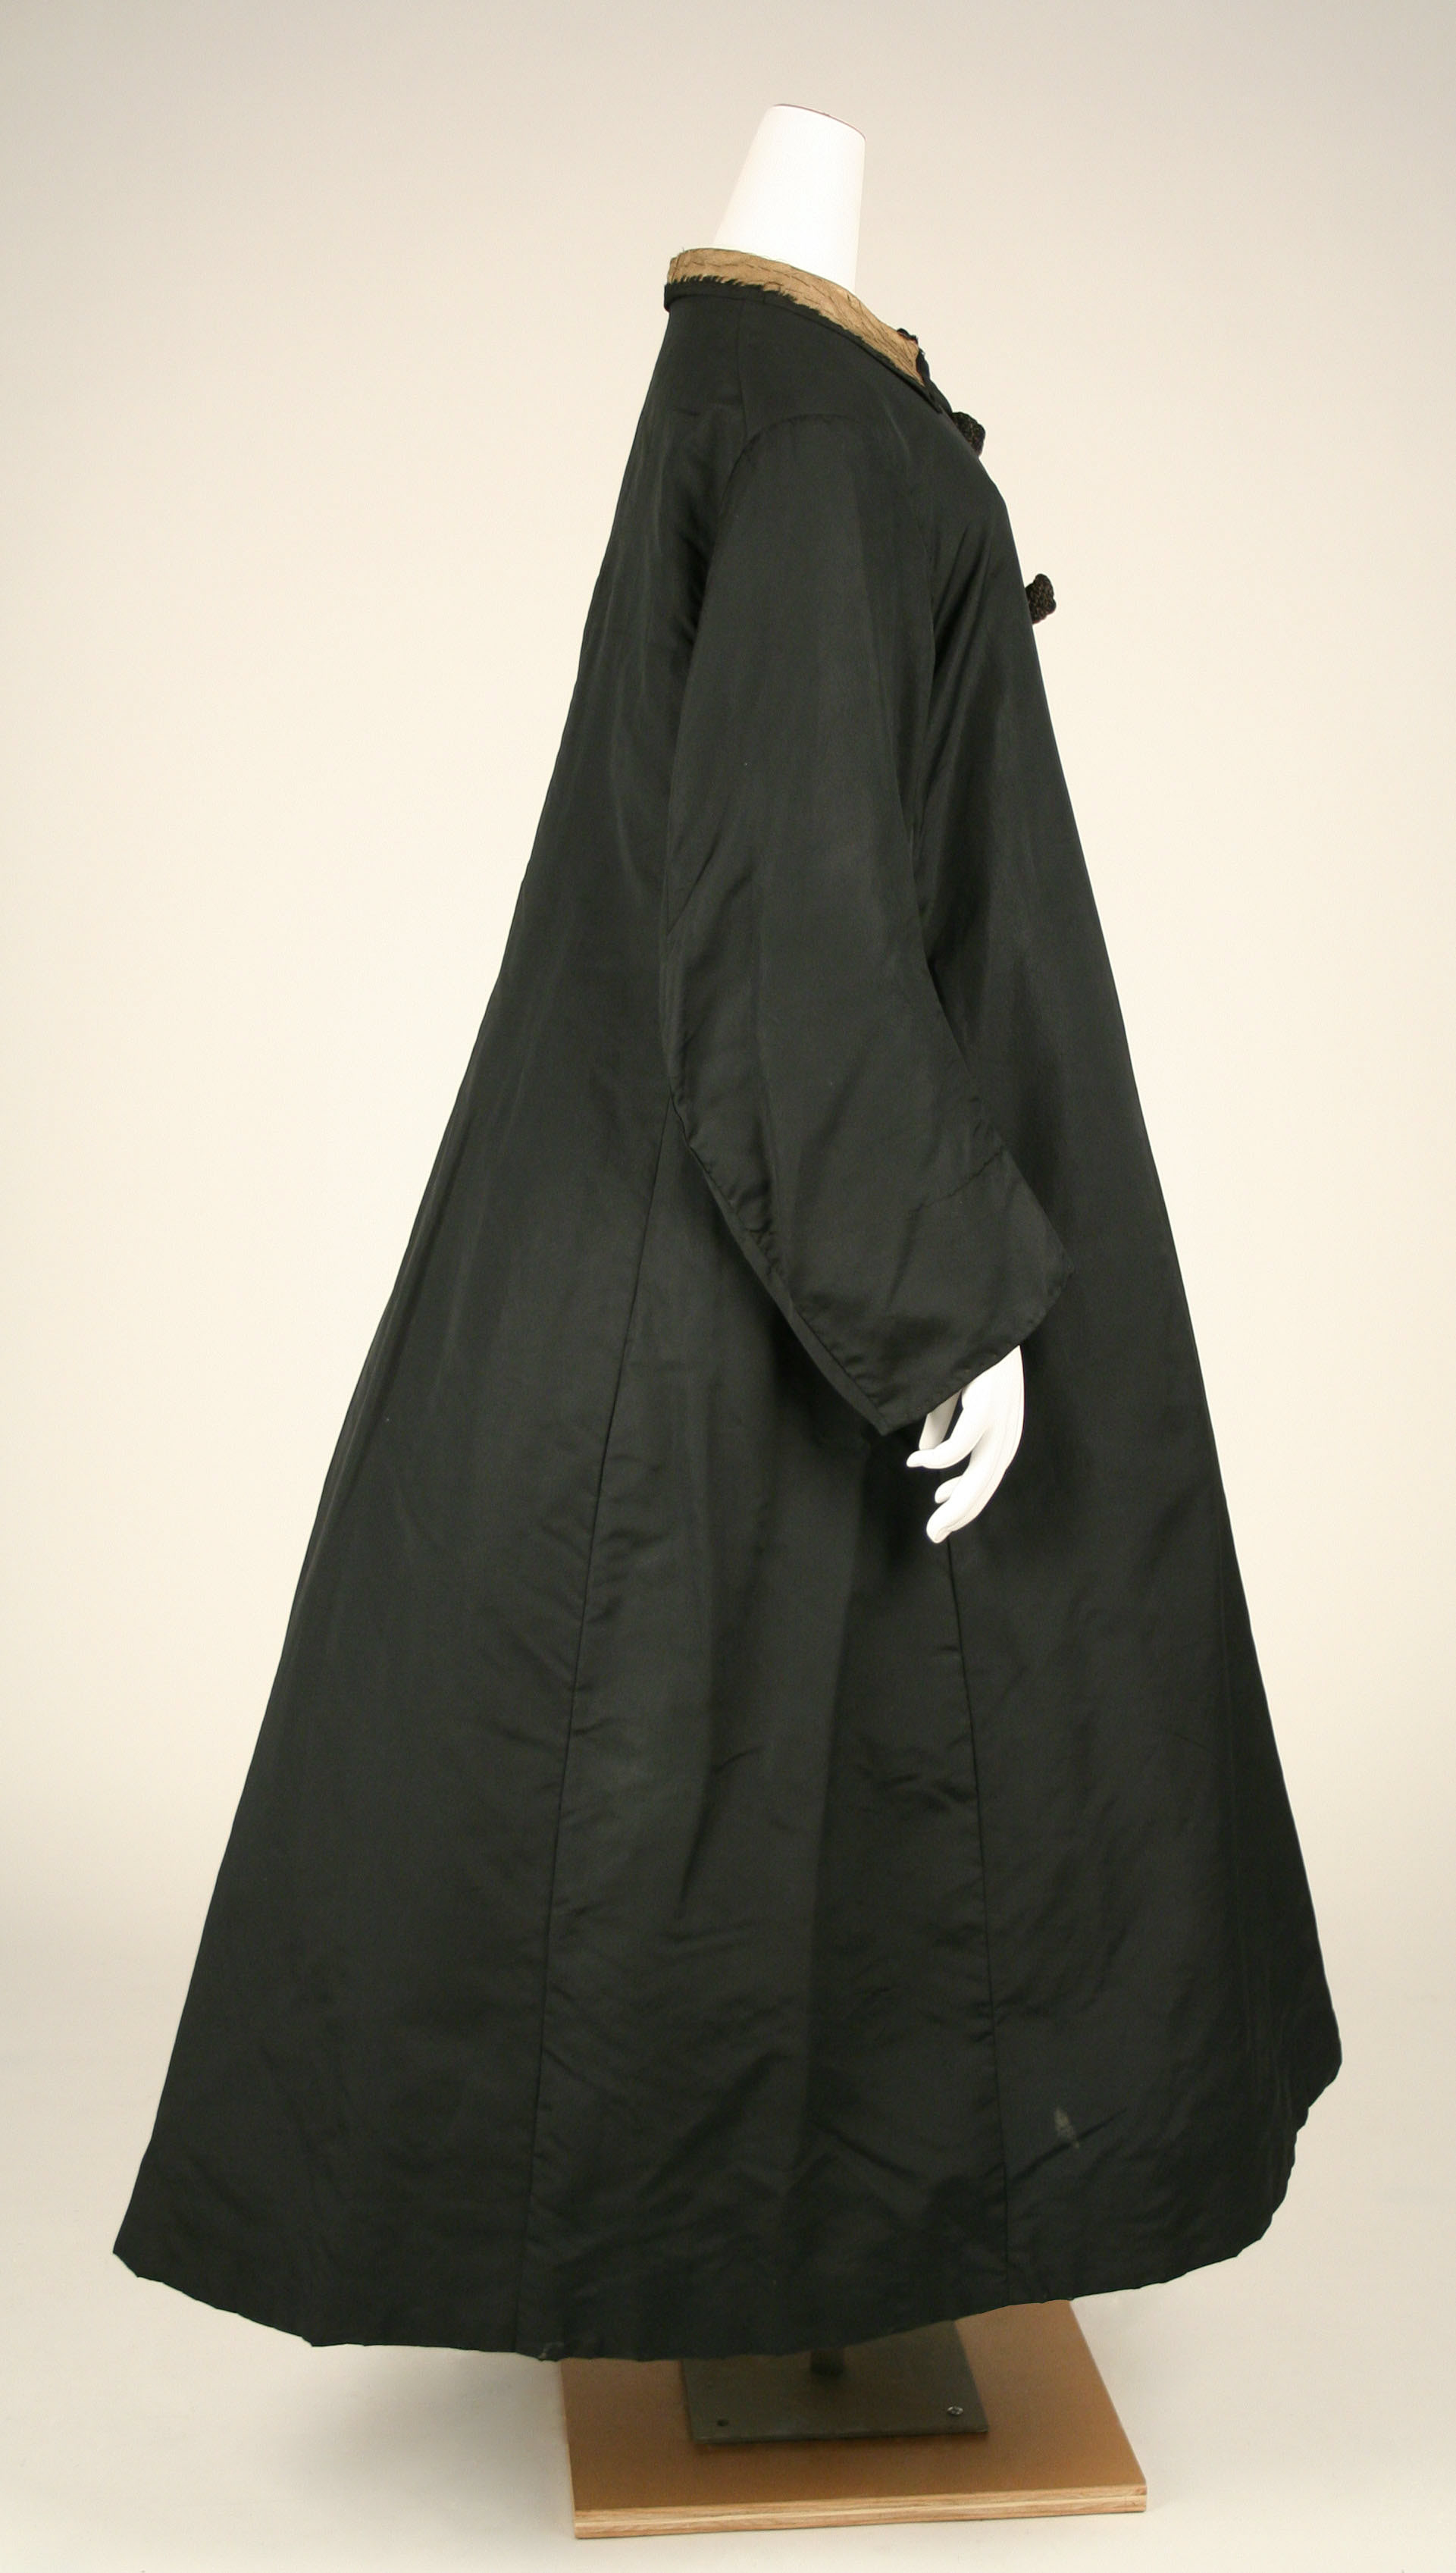 Cloak | American or European | The Metropolitan Museum of Art